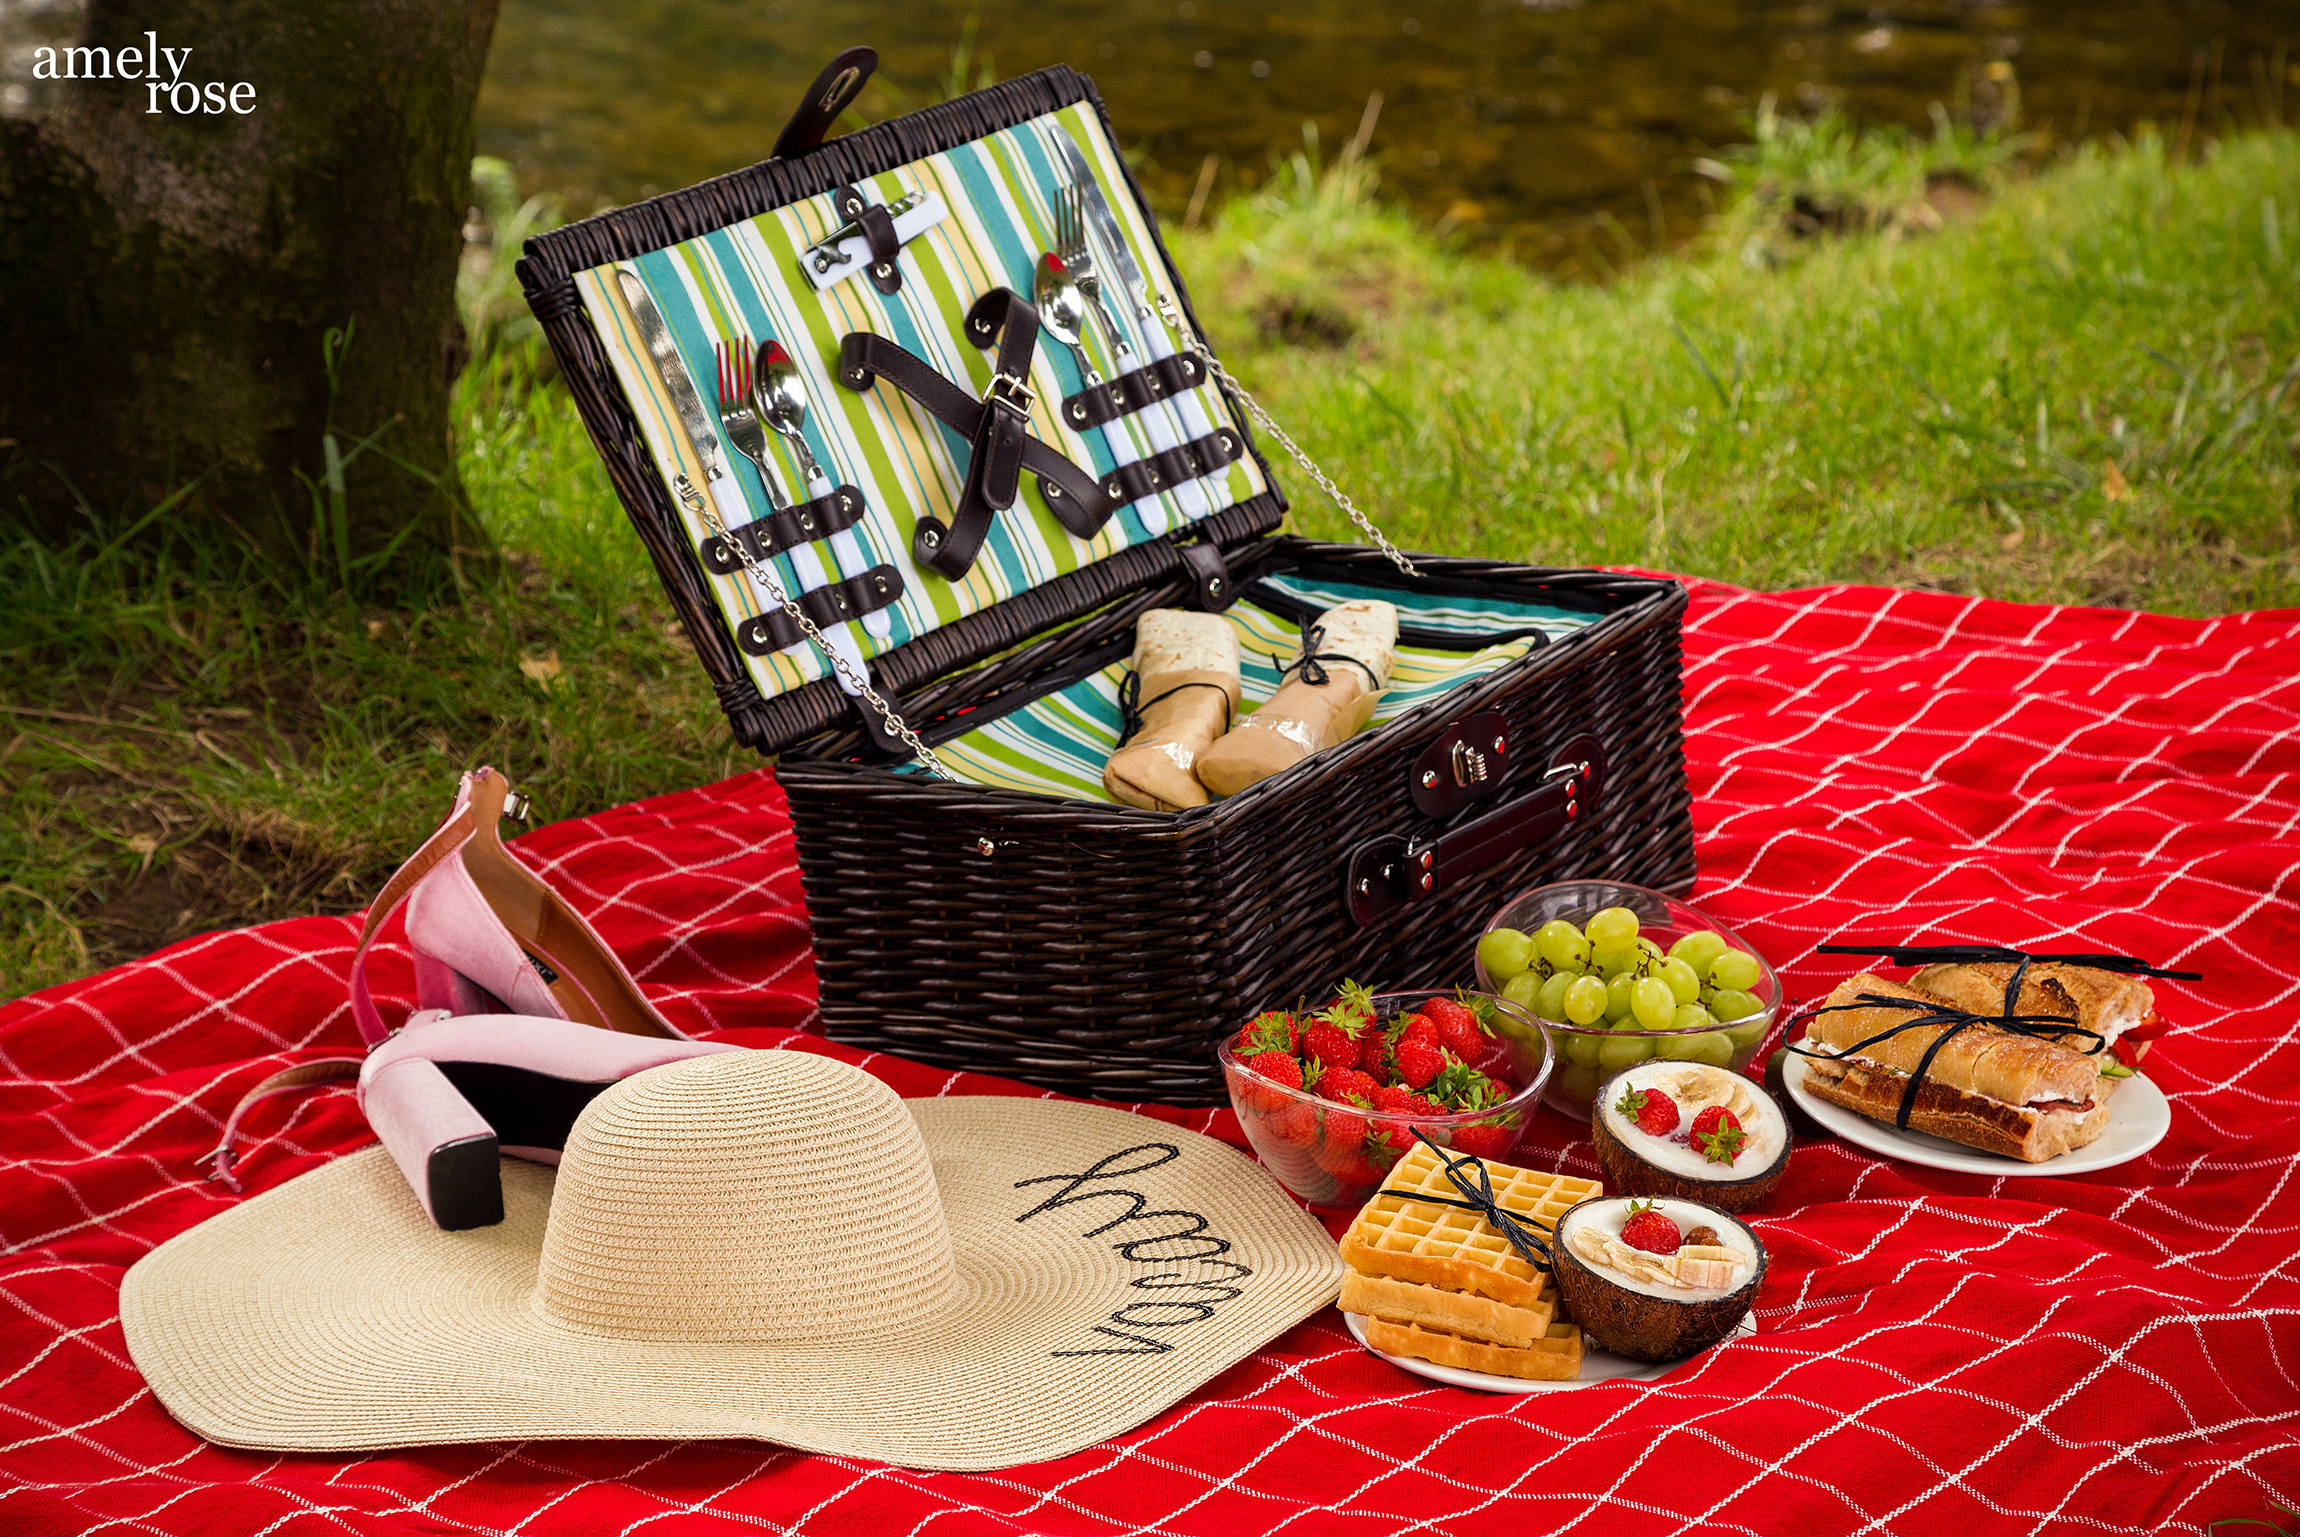 amely rose, german influencer und fashion blogger macht ein picknick im sommer mit leckeren leichten diät-rezepten